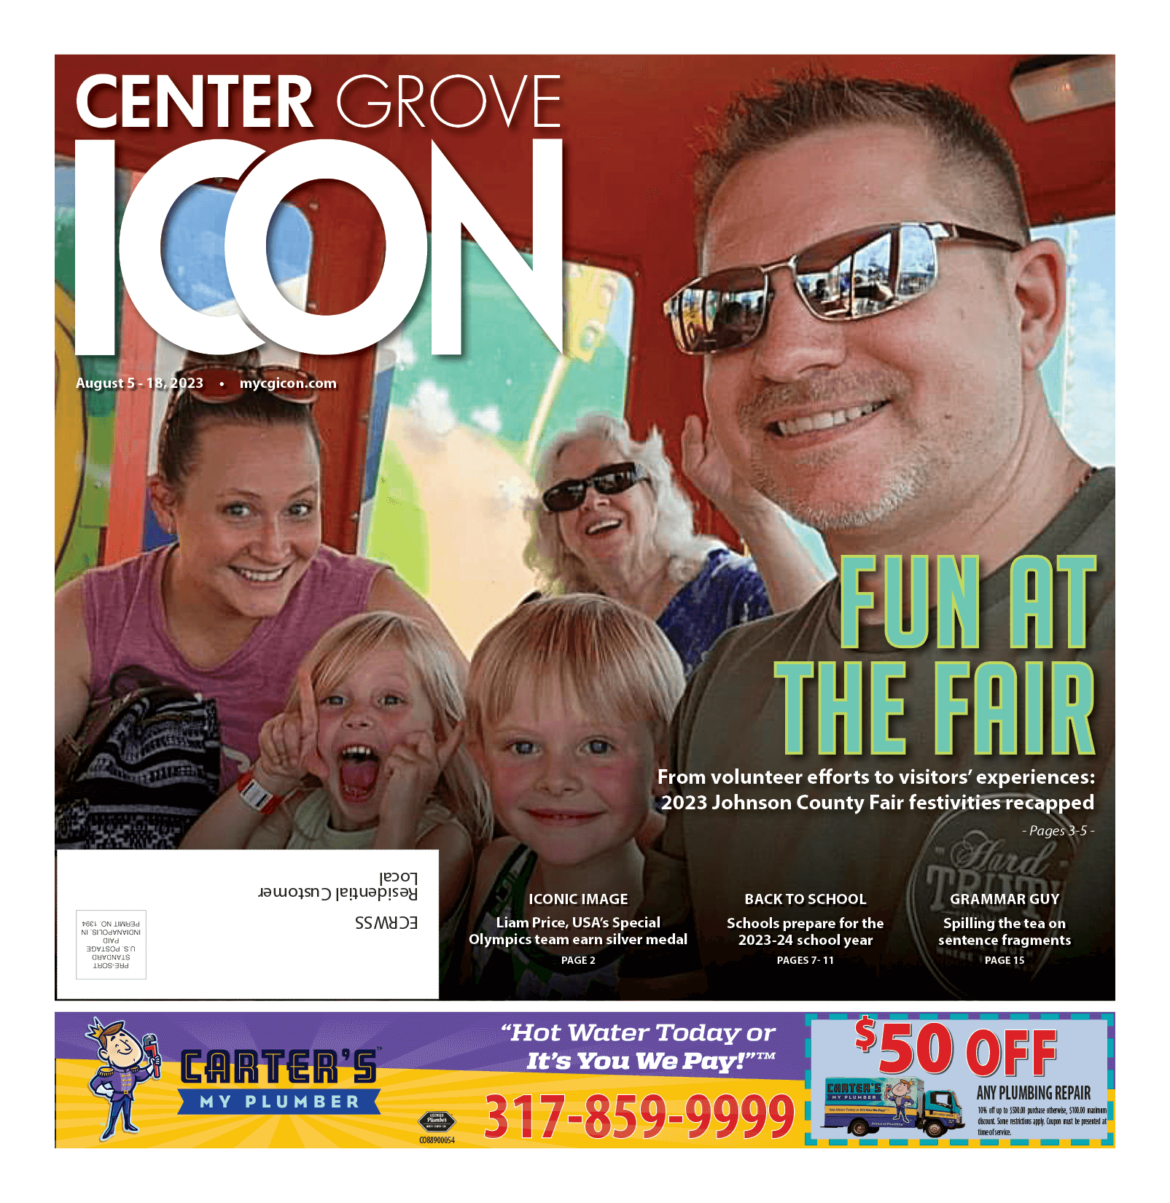 Center Grove ICON – Aug. 5-18, 2023